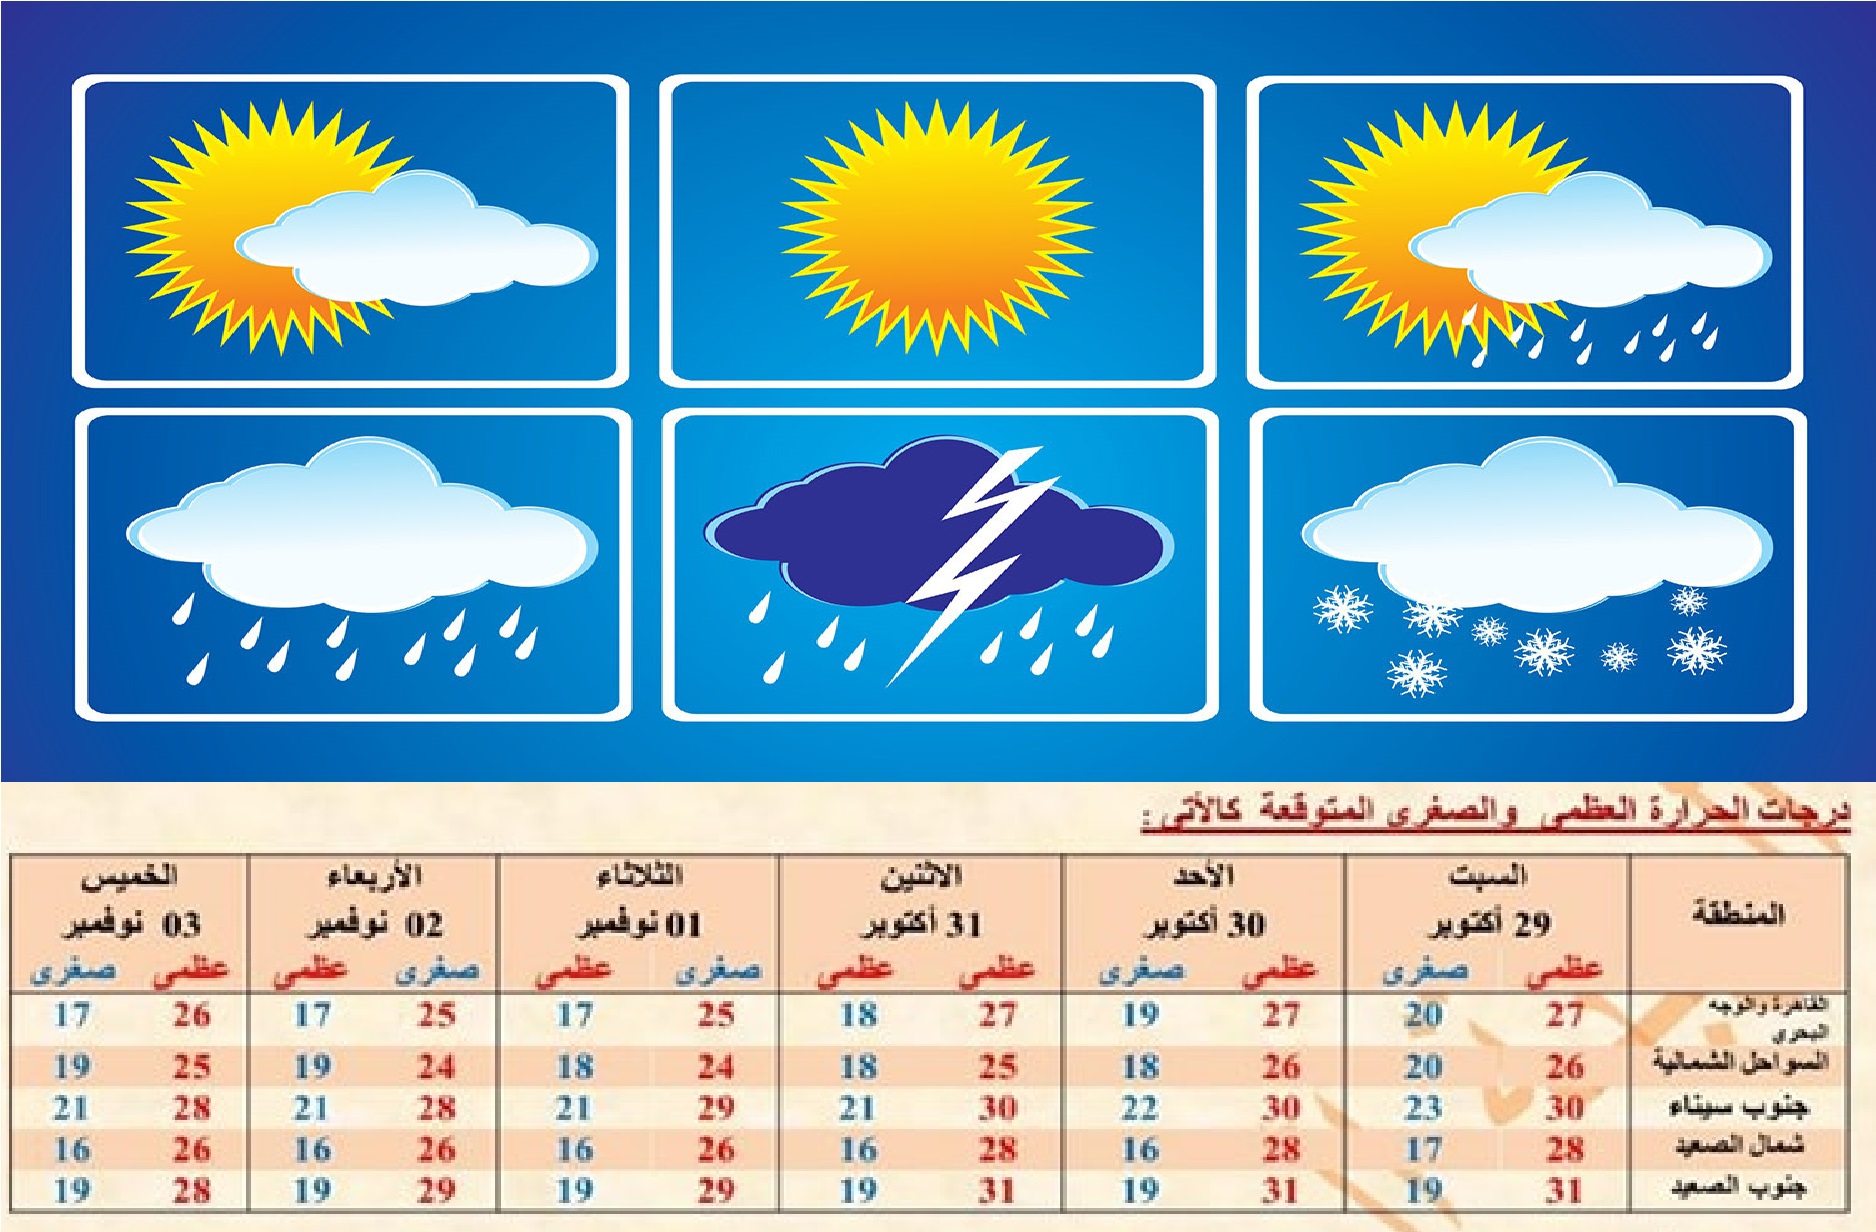 أخبار الطقس غدا السبت وحتى الخميس القادم في القاهرة والمحافظات احذر من الأمطار والشبورة